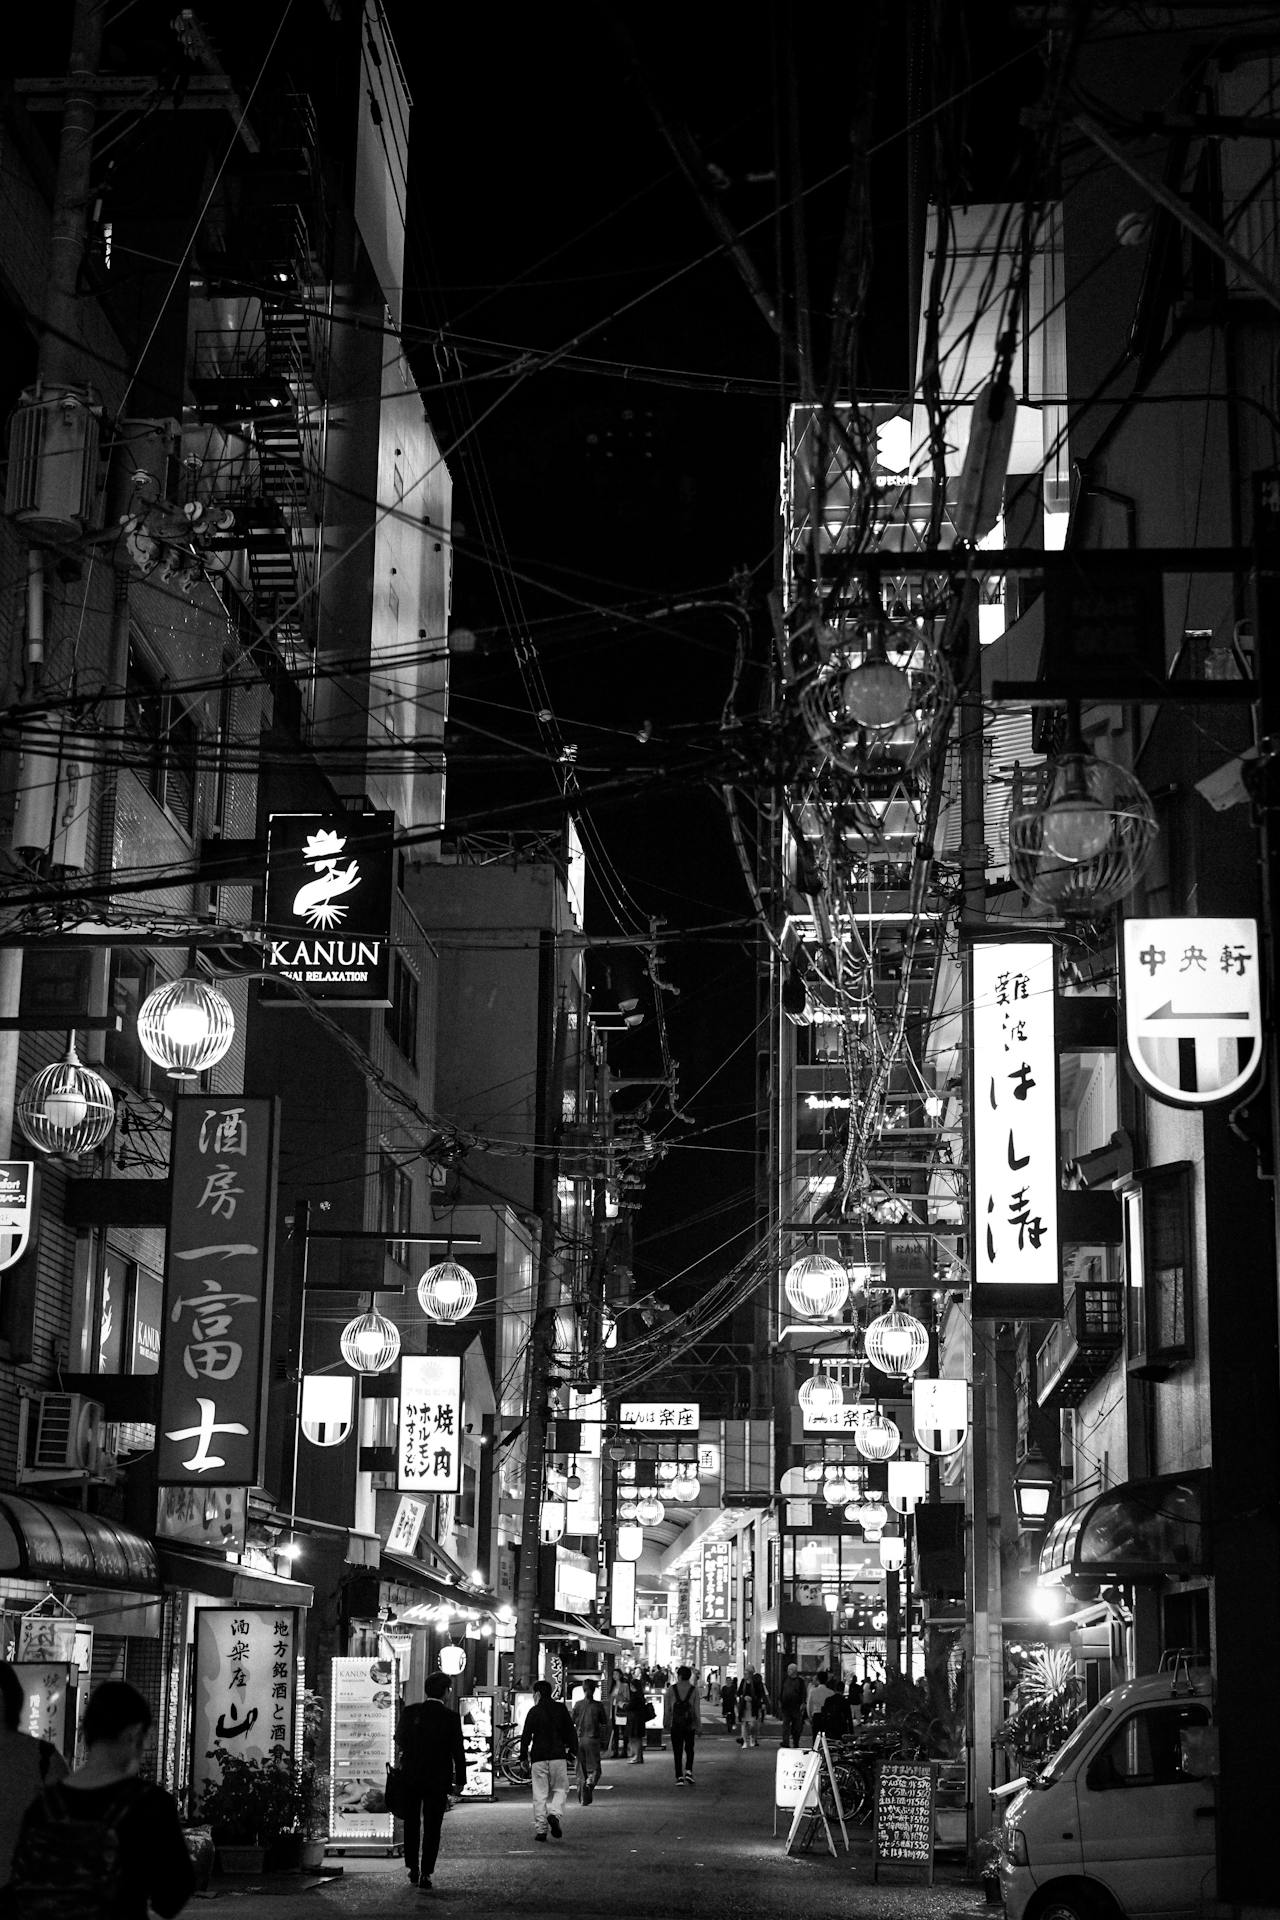 Osaka Namba neighborhood at night